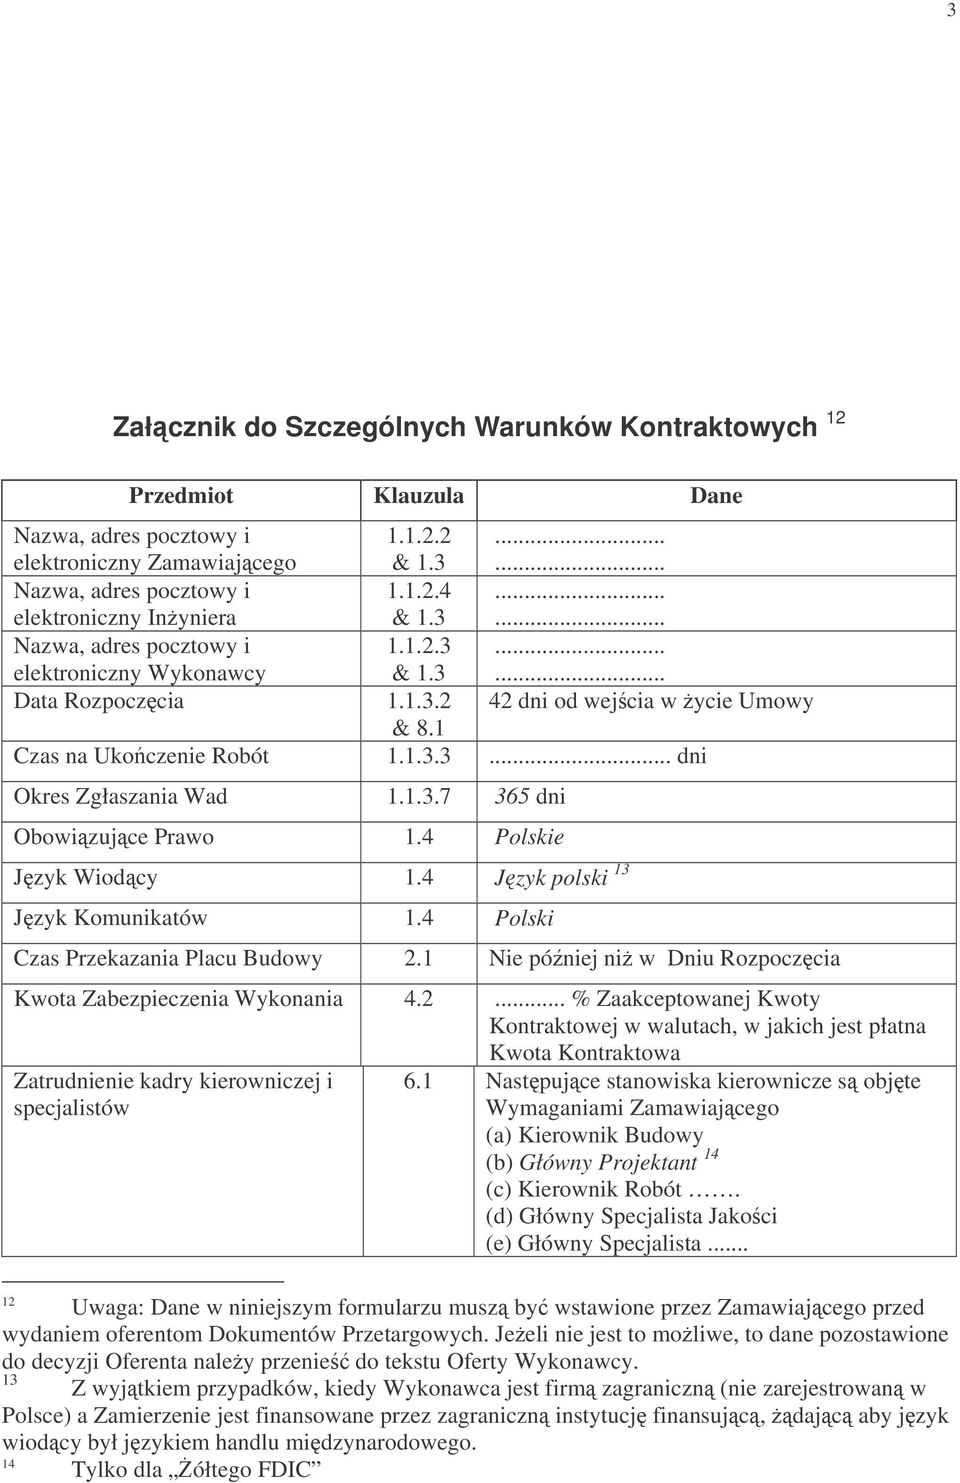 4 Polskie Jzyk Wiodcy 1.4 Jzyk polski 13 Jzyk Komunikatów 1.4 Polski Czas Przekazania Placu Budowy 2.